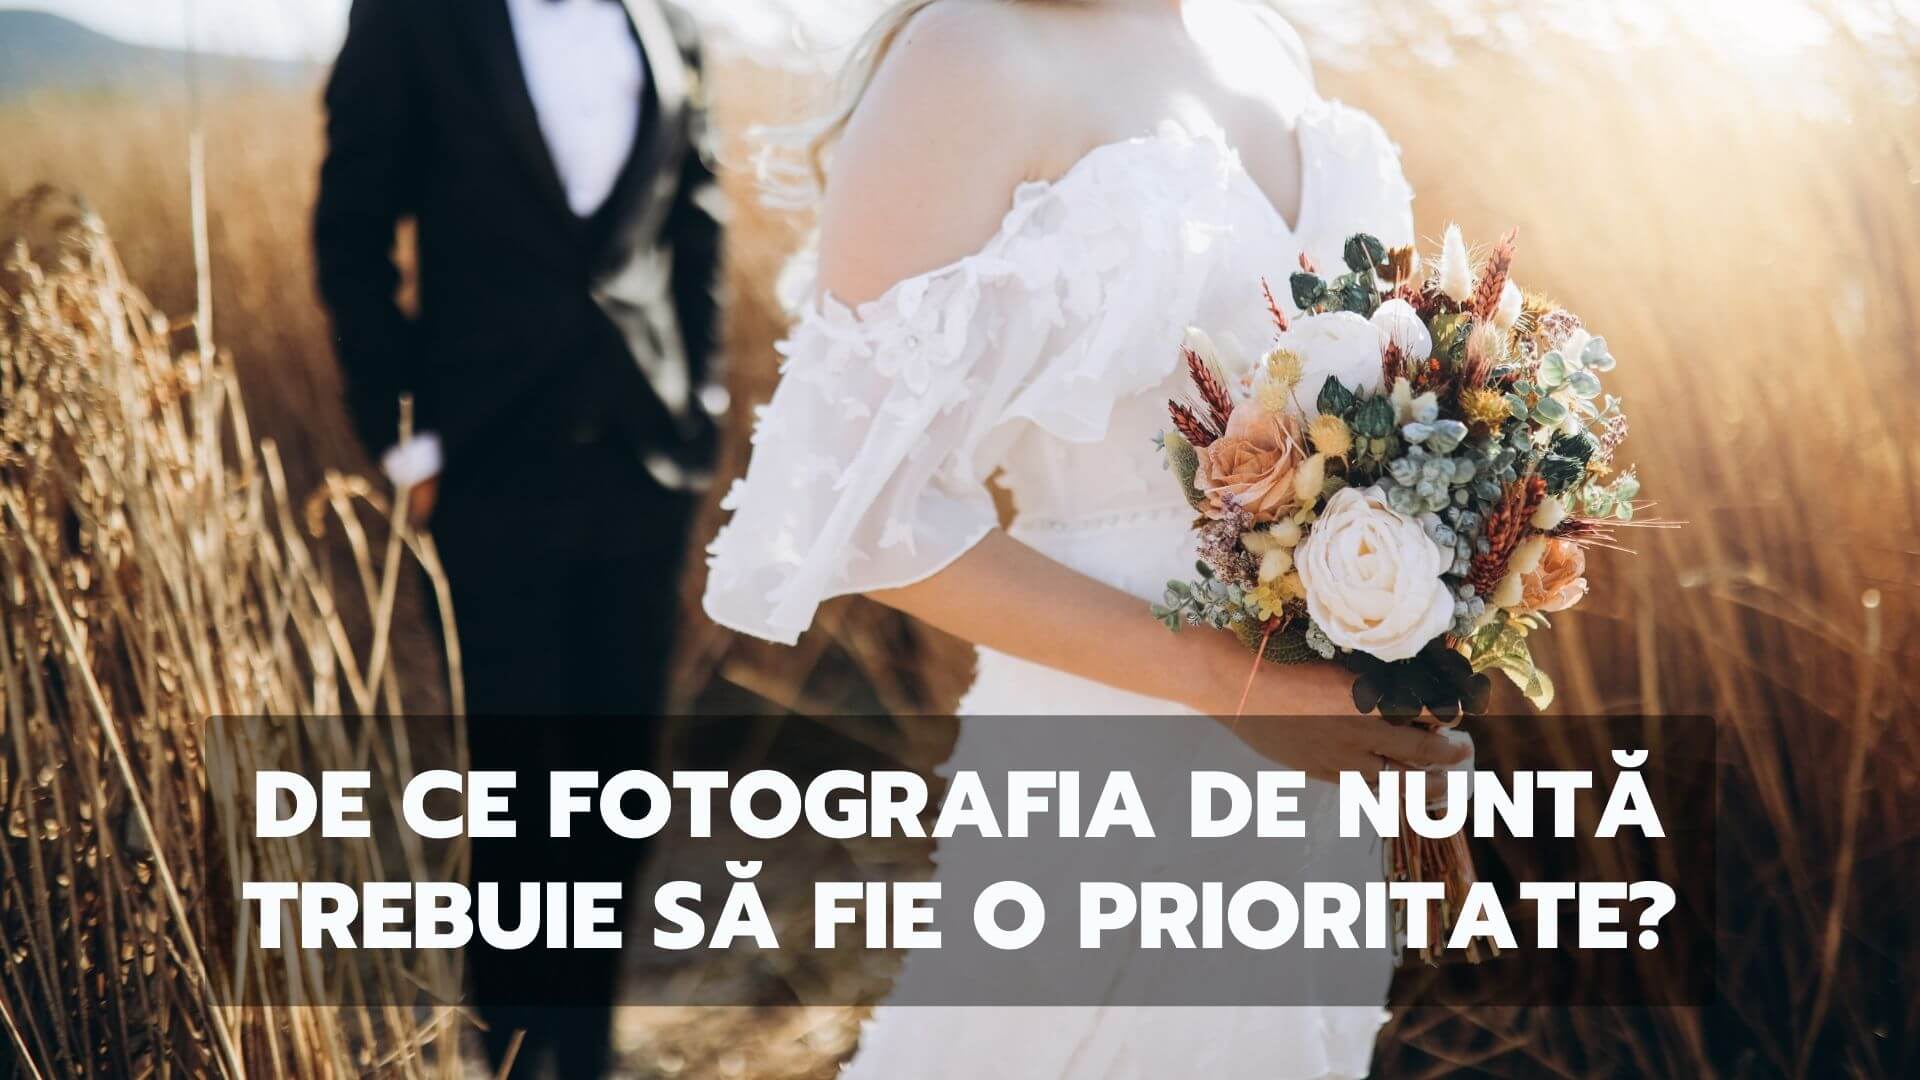 De ce fotografia de nunta trebuie sa fie o prioritate?